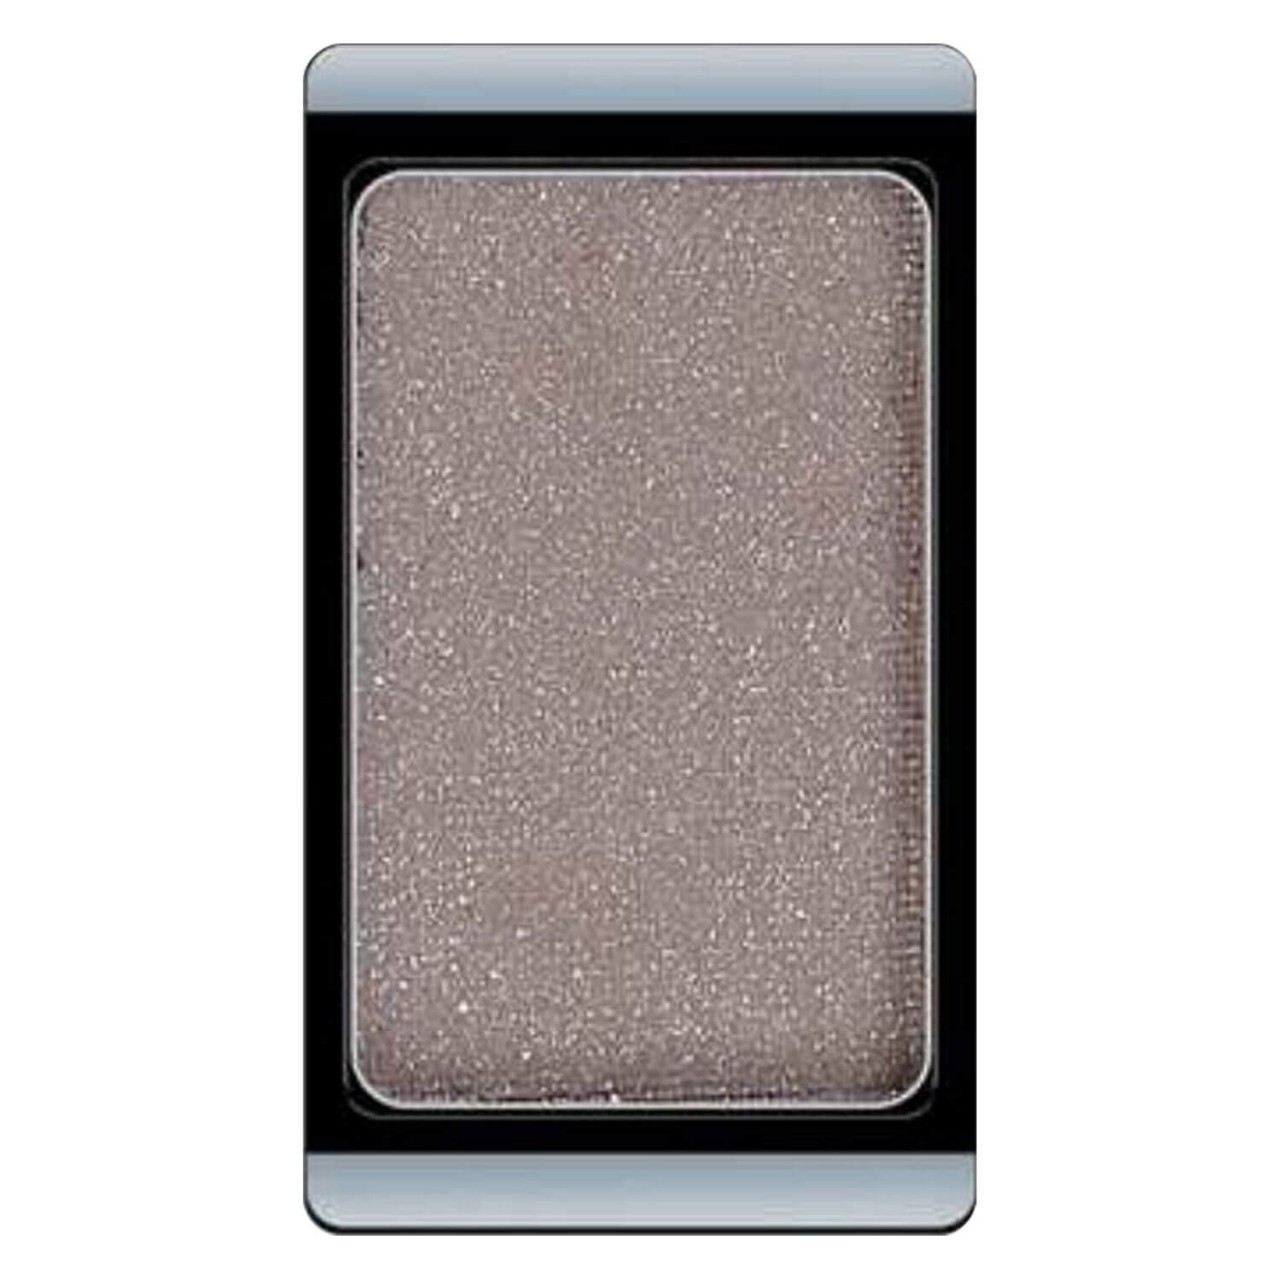 Eyeshadow Glamour - Grey Beige 350 von Artdeco